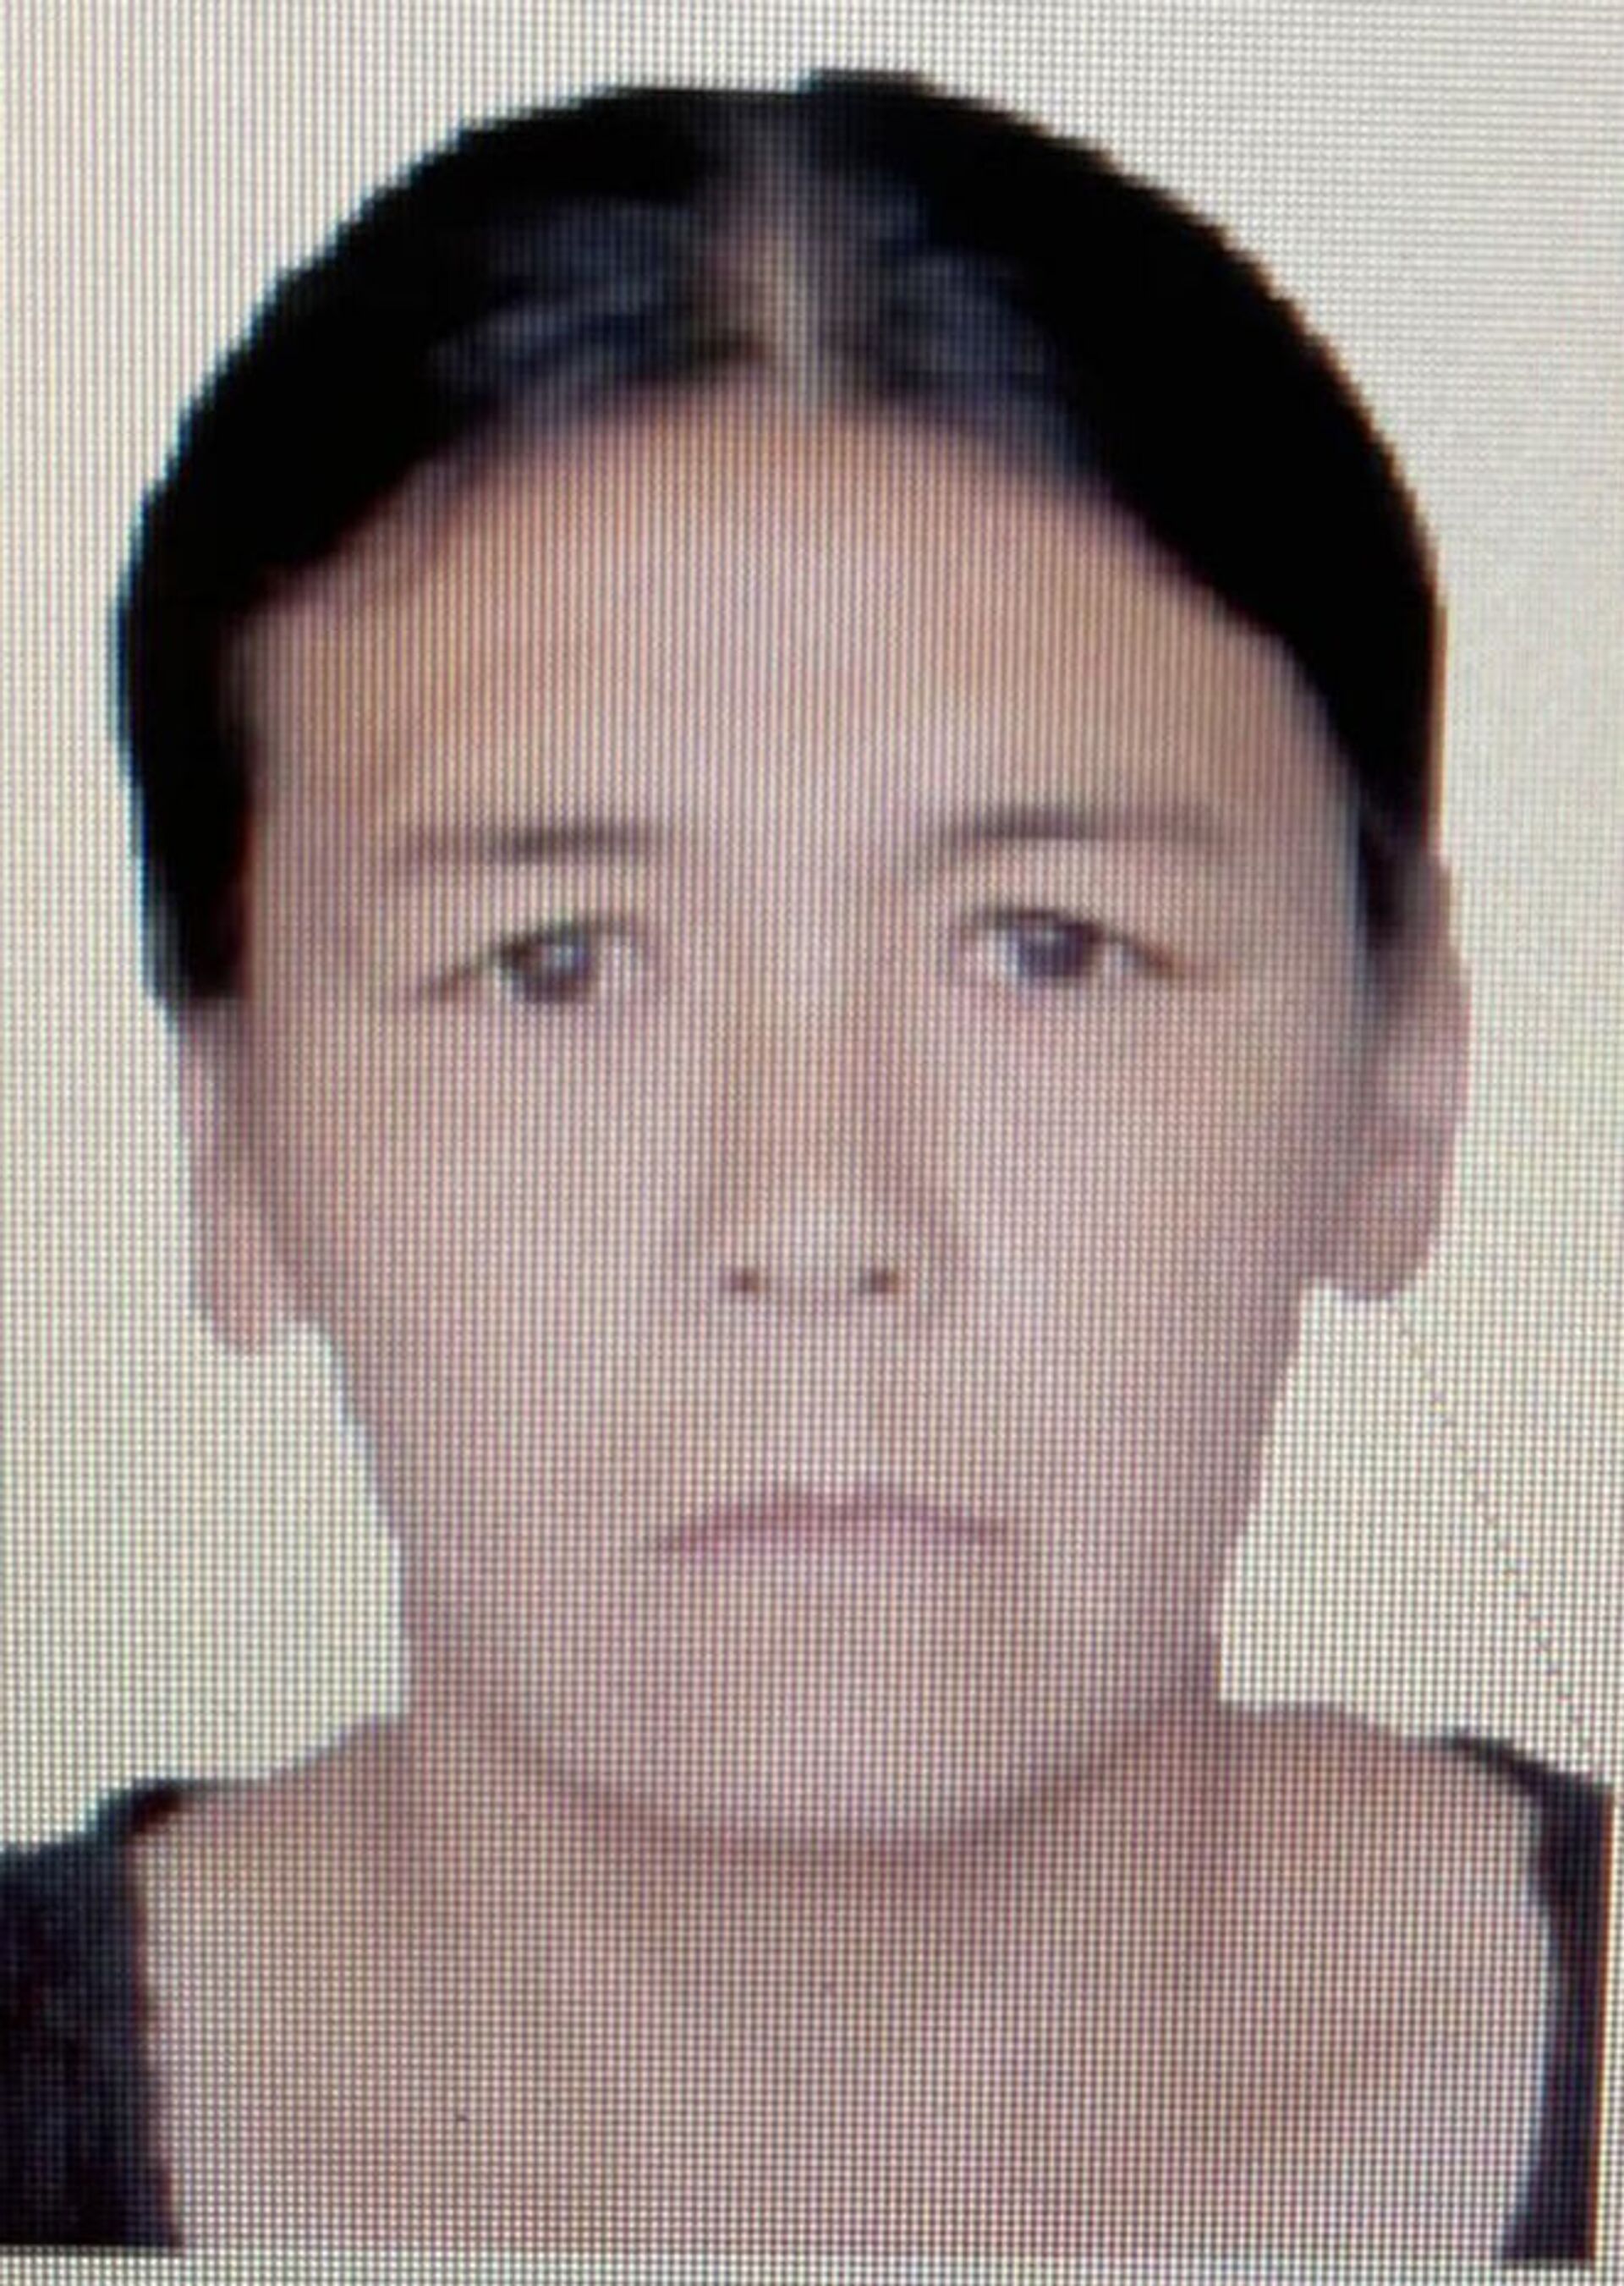 Женщина пропала 1,5 года назад — Чуйское ГУВД разослало фото - Sputnik Кыргызстан, 1920, 08.02.2021